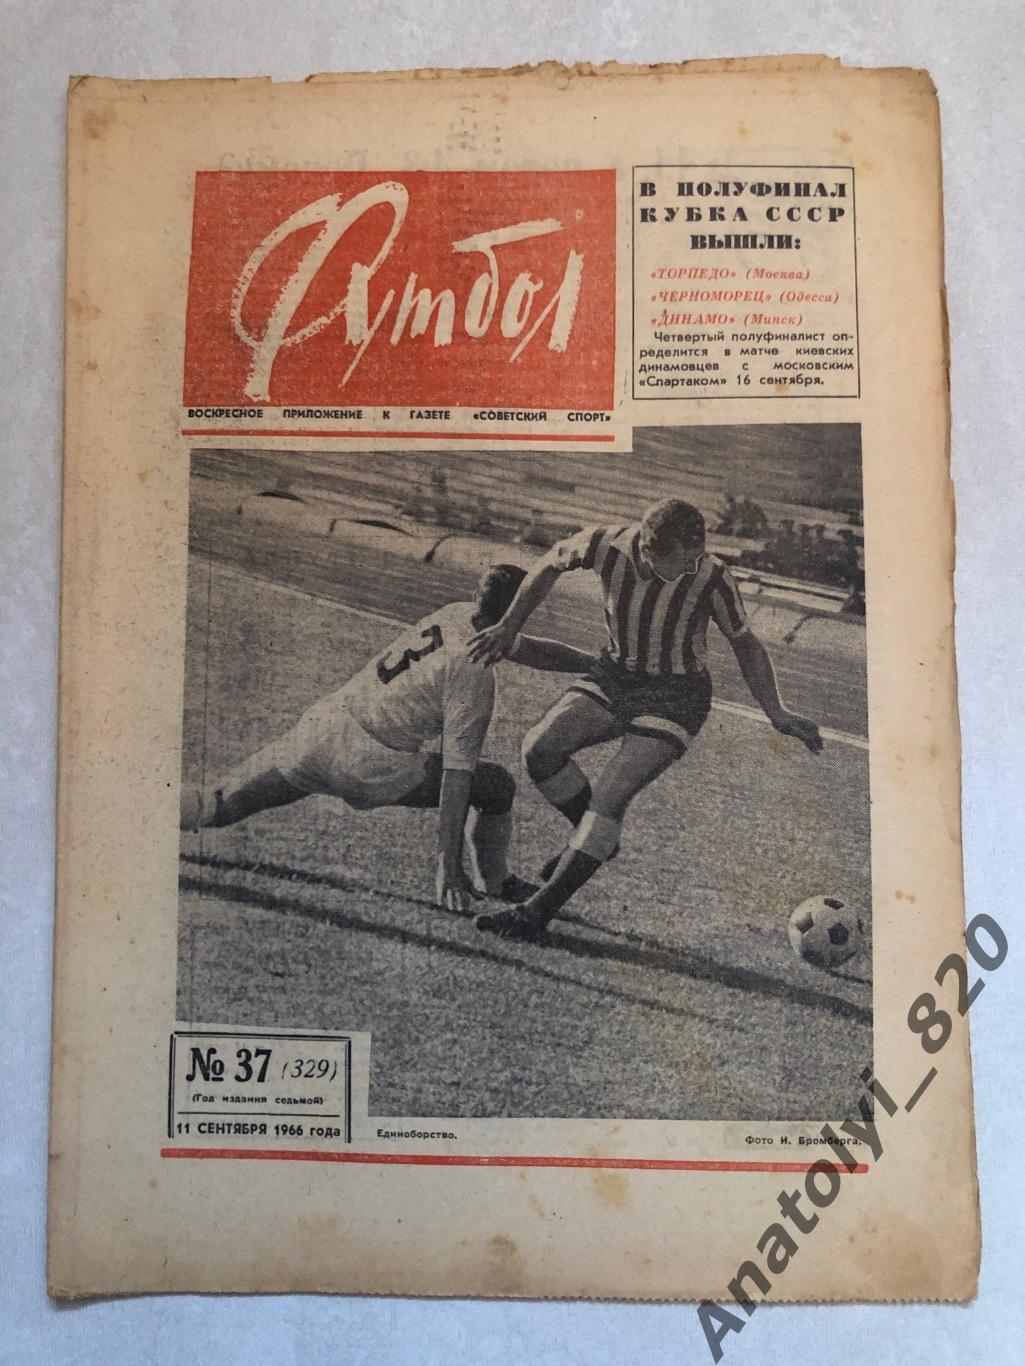 Еженедельник футбол номер 37 от 11.09.1966